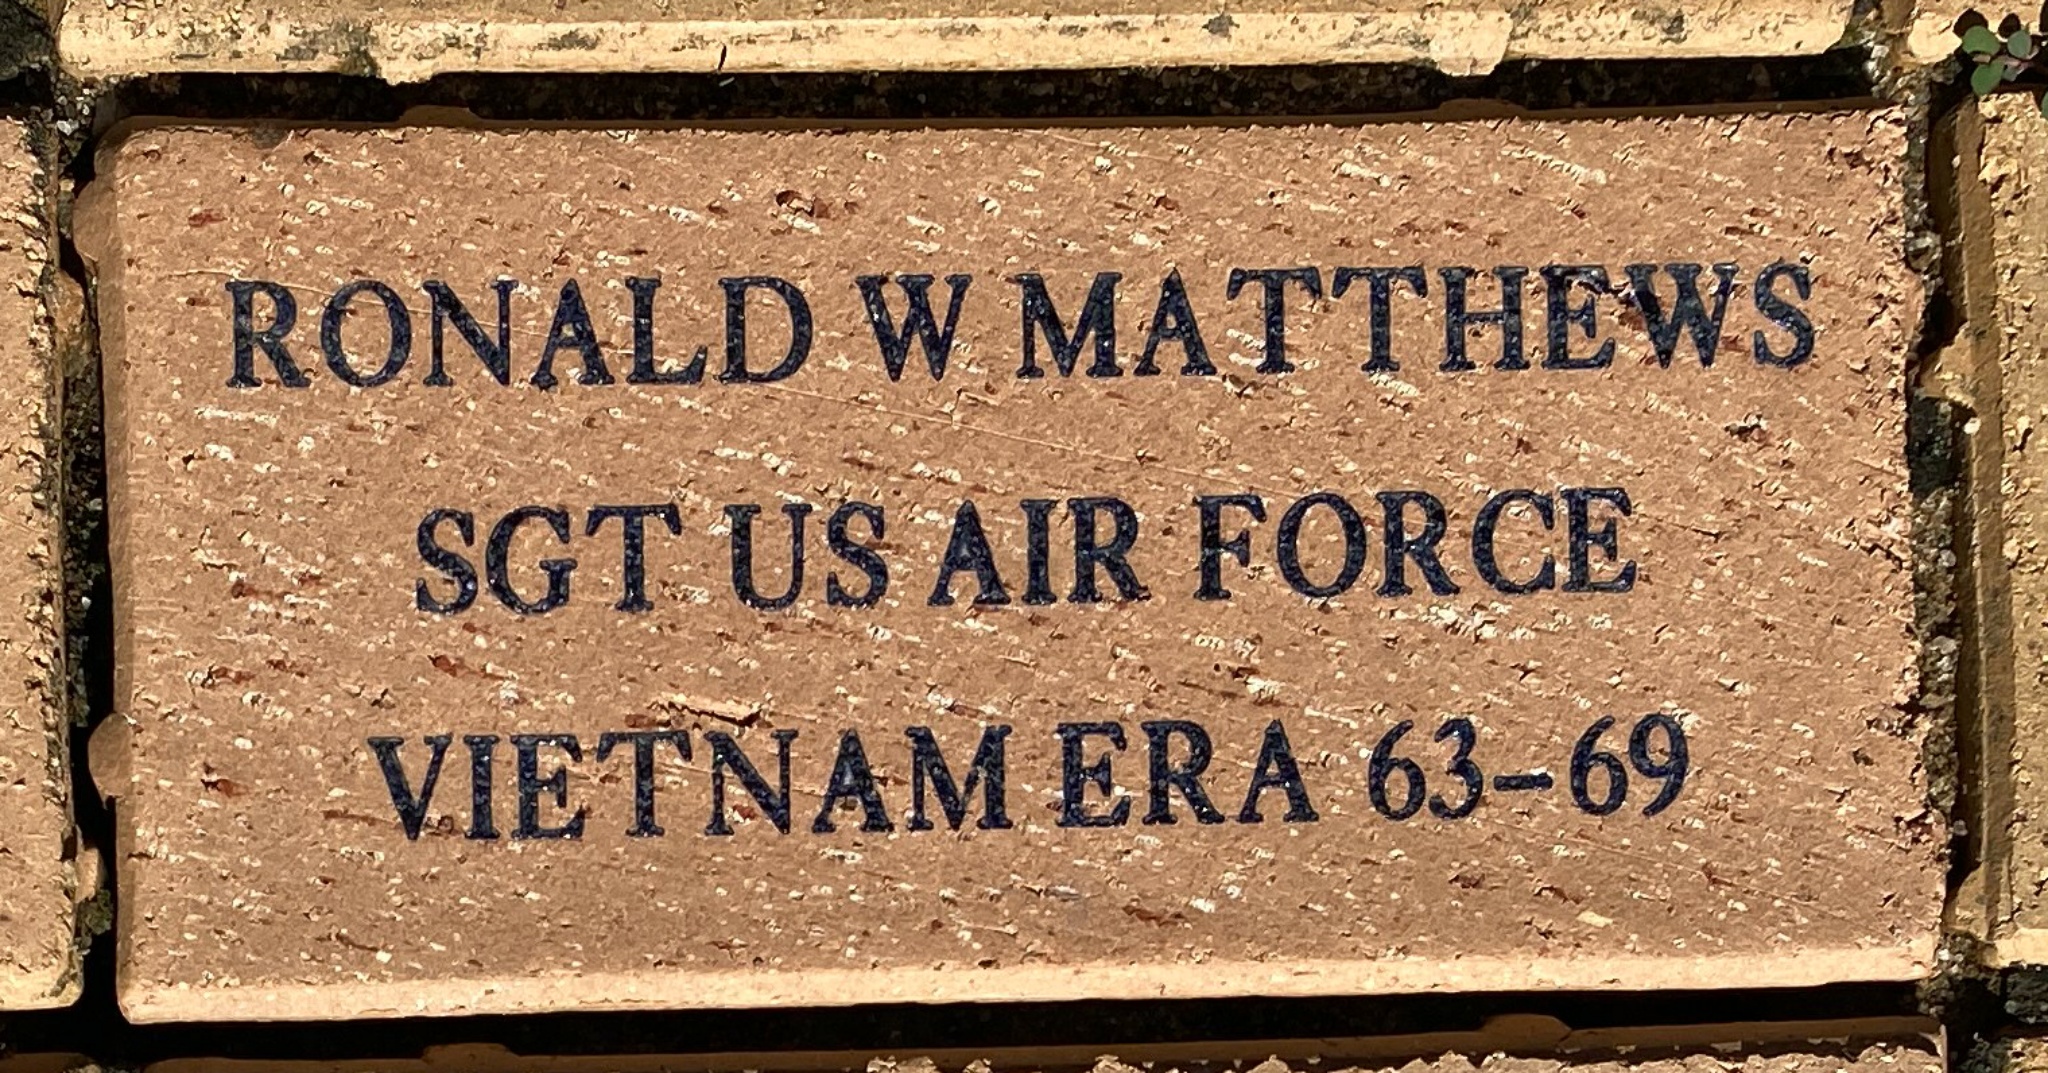 RONALD W MATTHEWS SGT US AIR FORCE VIETNAM ERA 63-69